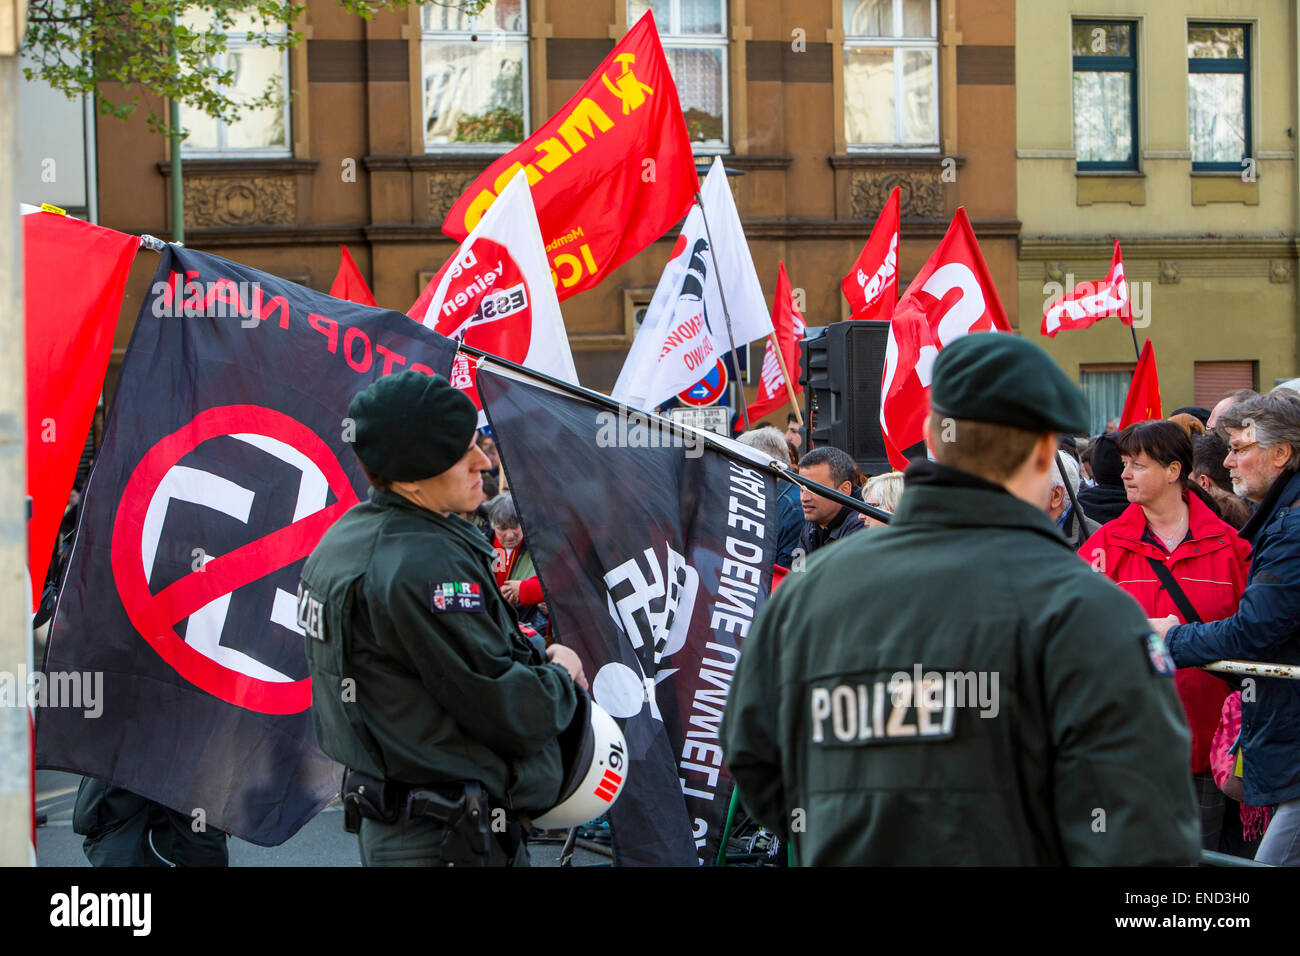 Dimostrazione di ala destra partito neonazista 'Die Rechte', un primo di maggio, ala sinistra contro i manifestanti, Essen, Germania Foto Stock